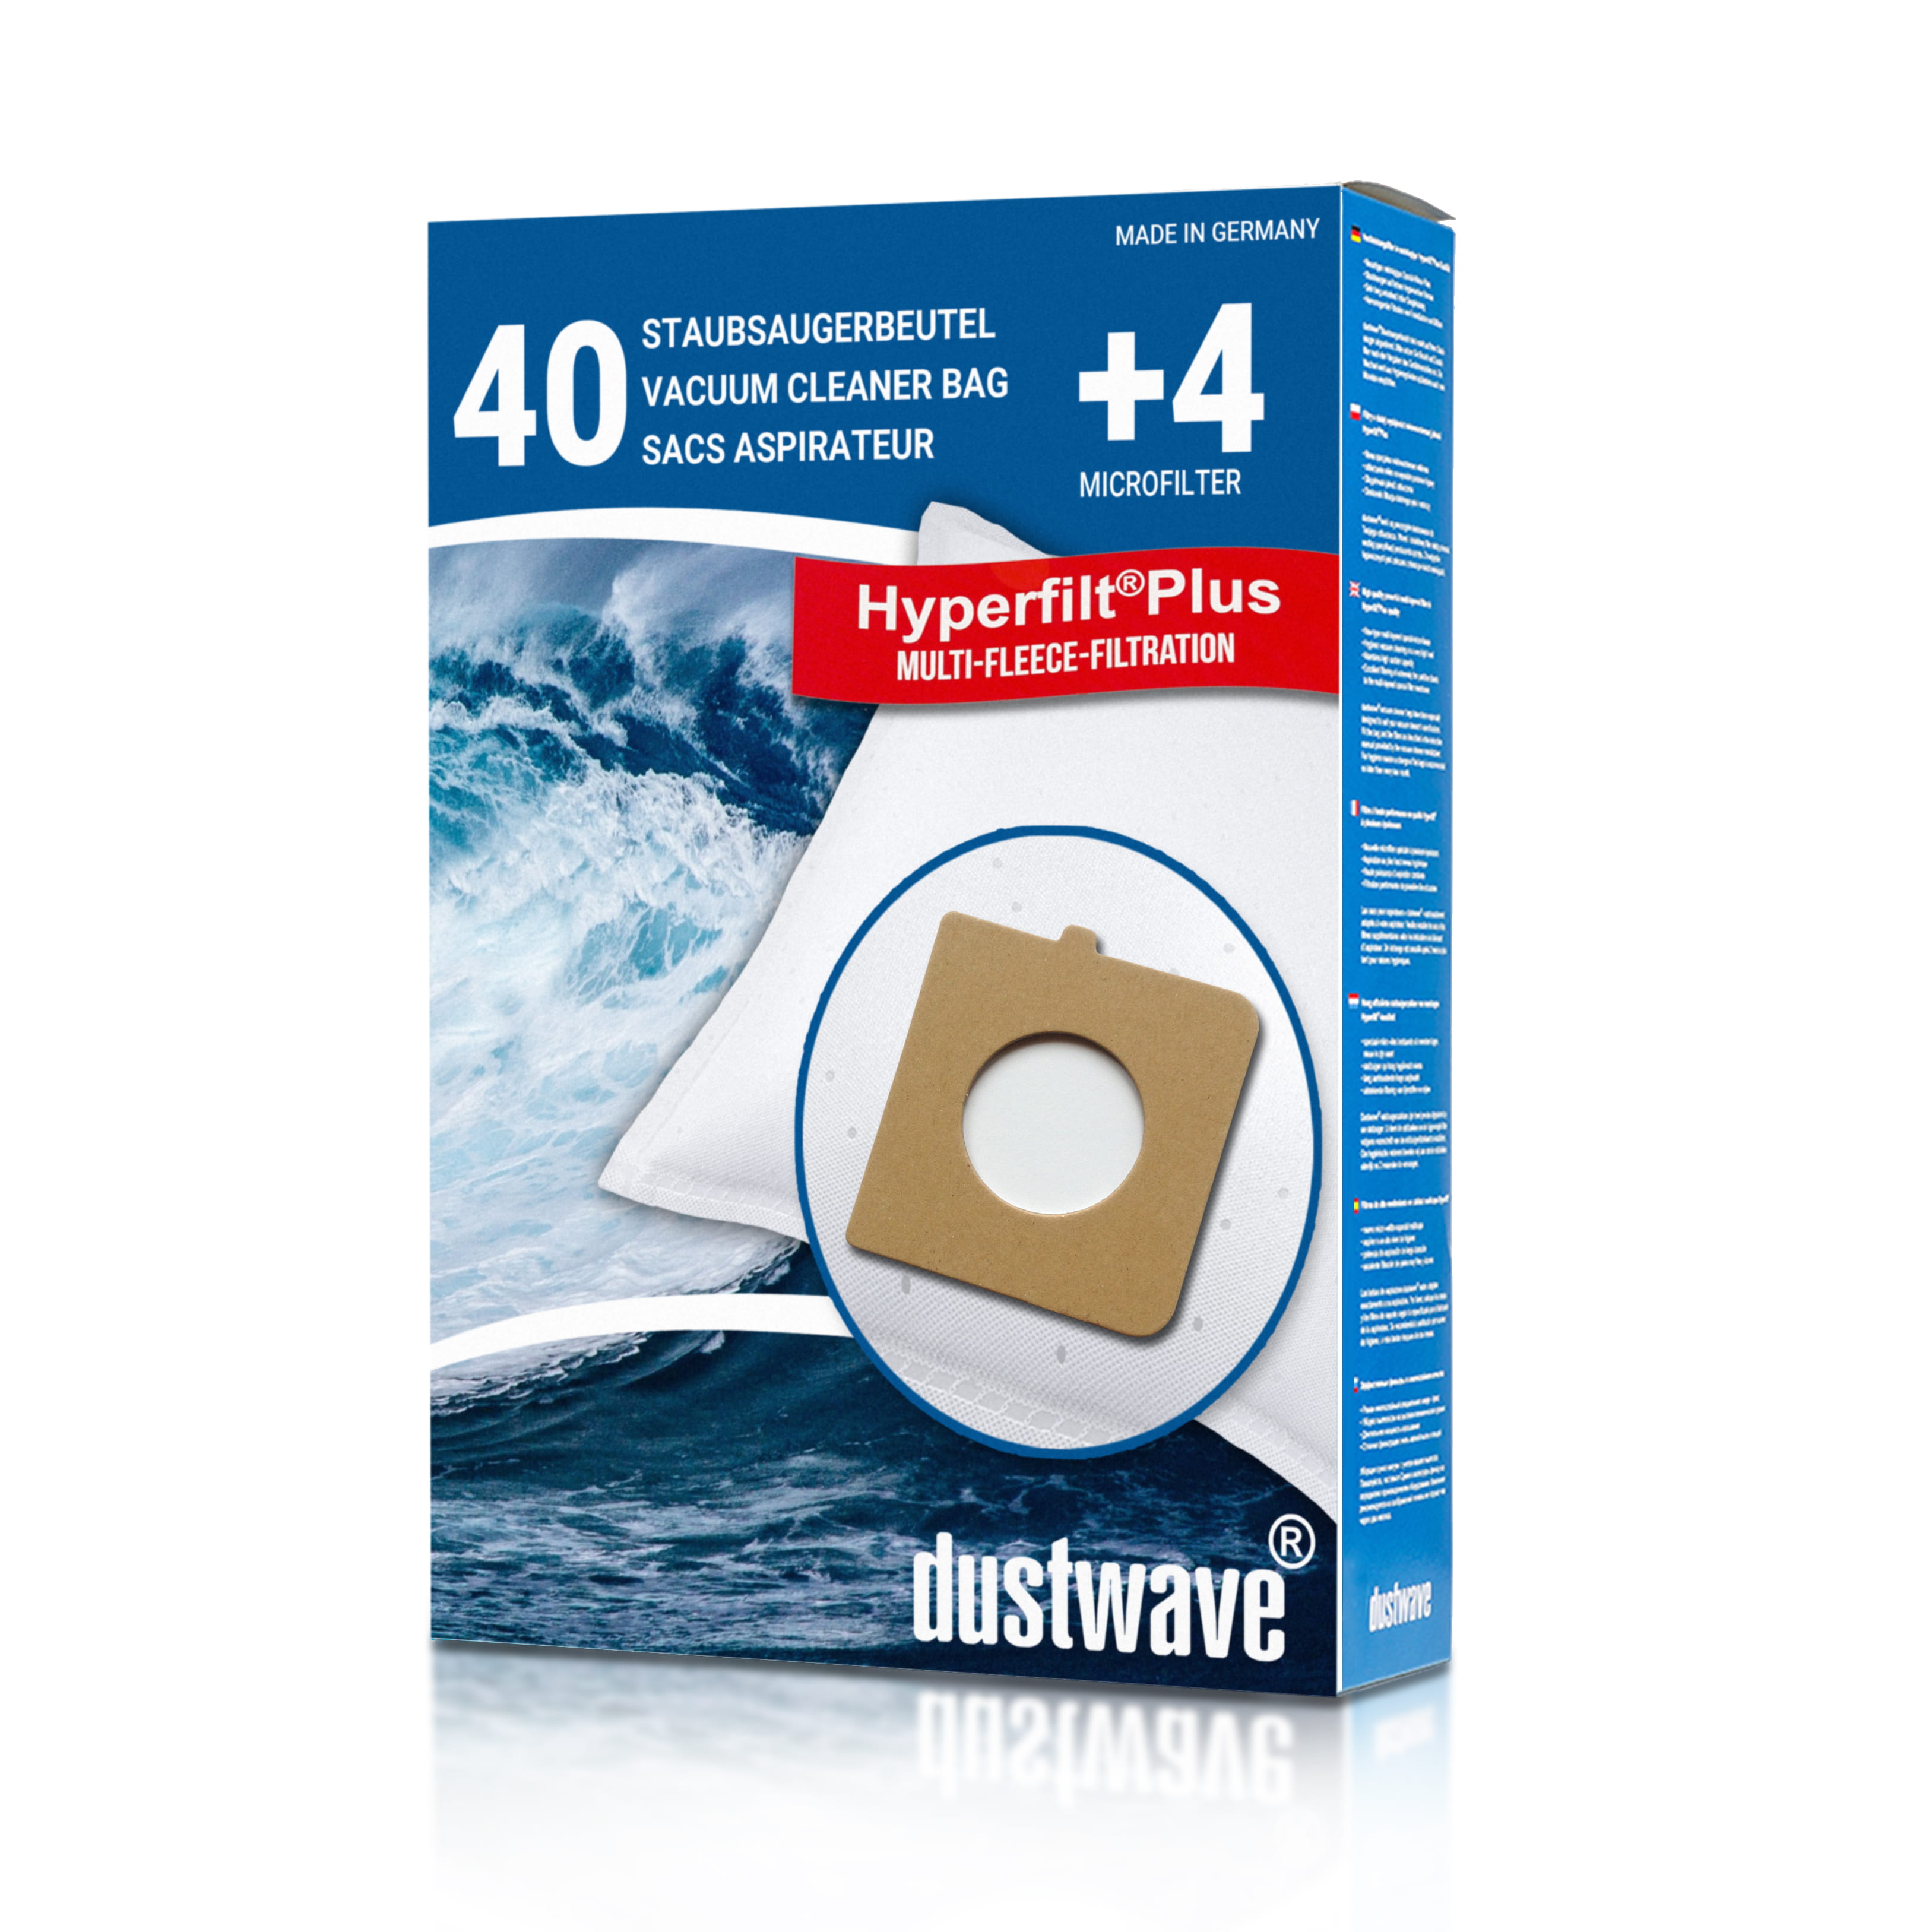 Dustwave® 40 Staubsaugerbeutel für Hoover Orig.-Nr. H81 Telios Extra - hocheffizient, mehrlagiges Mikrovlies mit Hygieneverschluss - Made in Germany